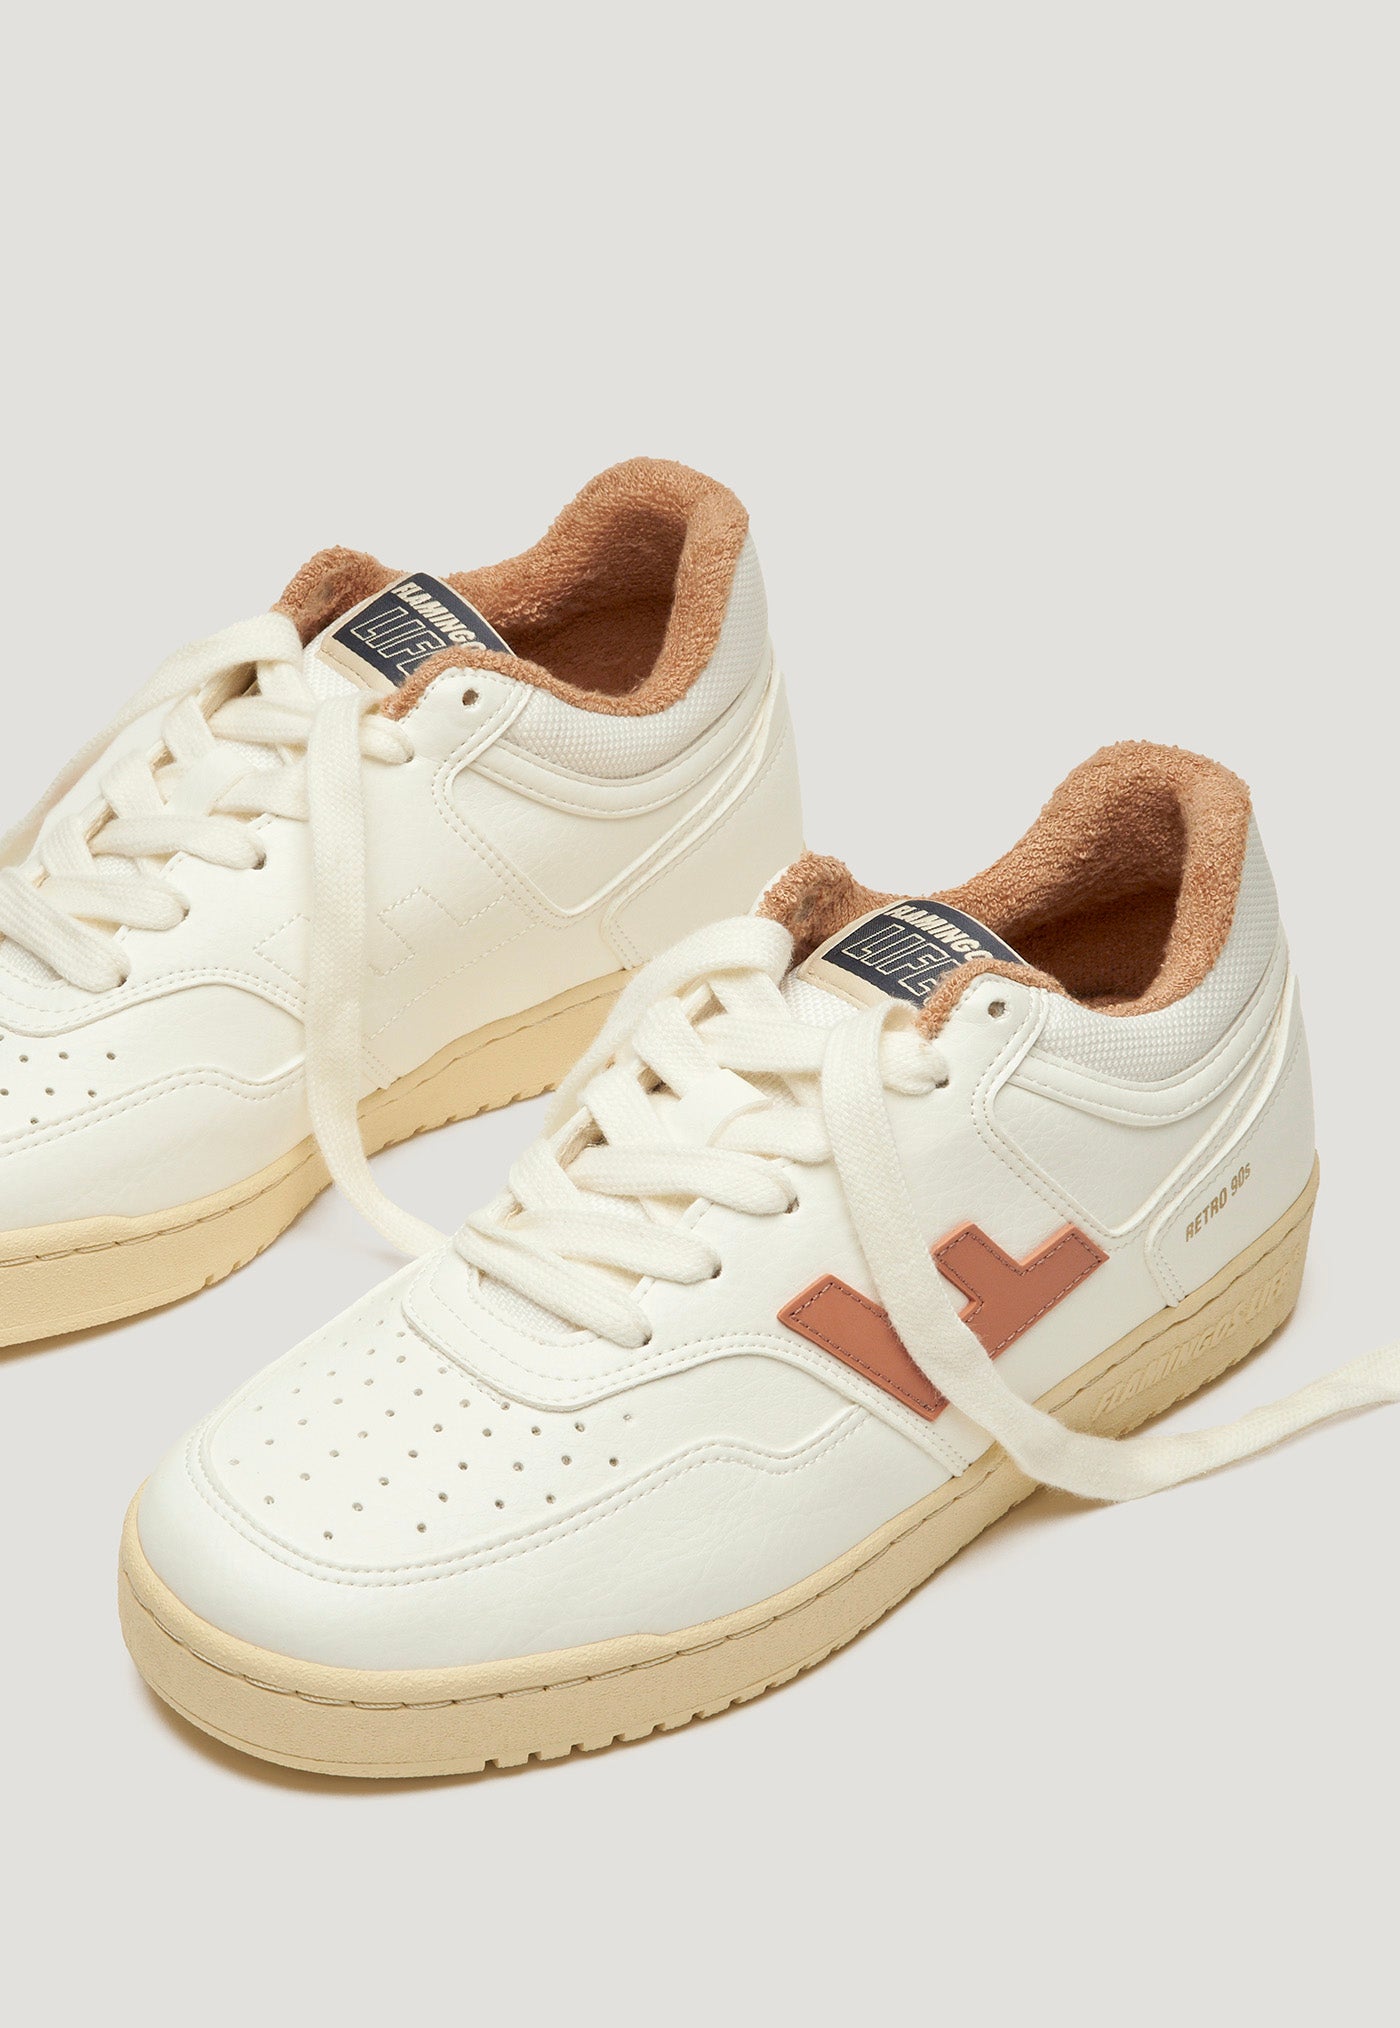 Retro 90s Sneaker - White Apricot Vanilla sold by Angel Divine